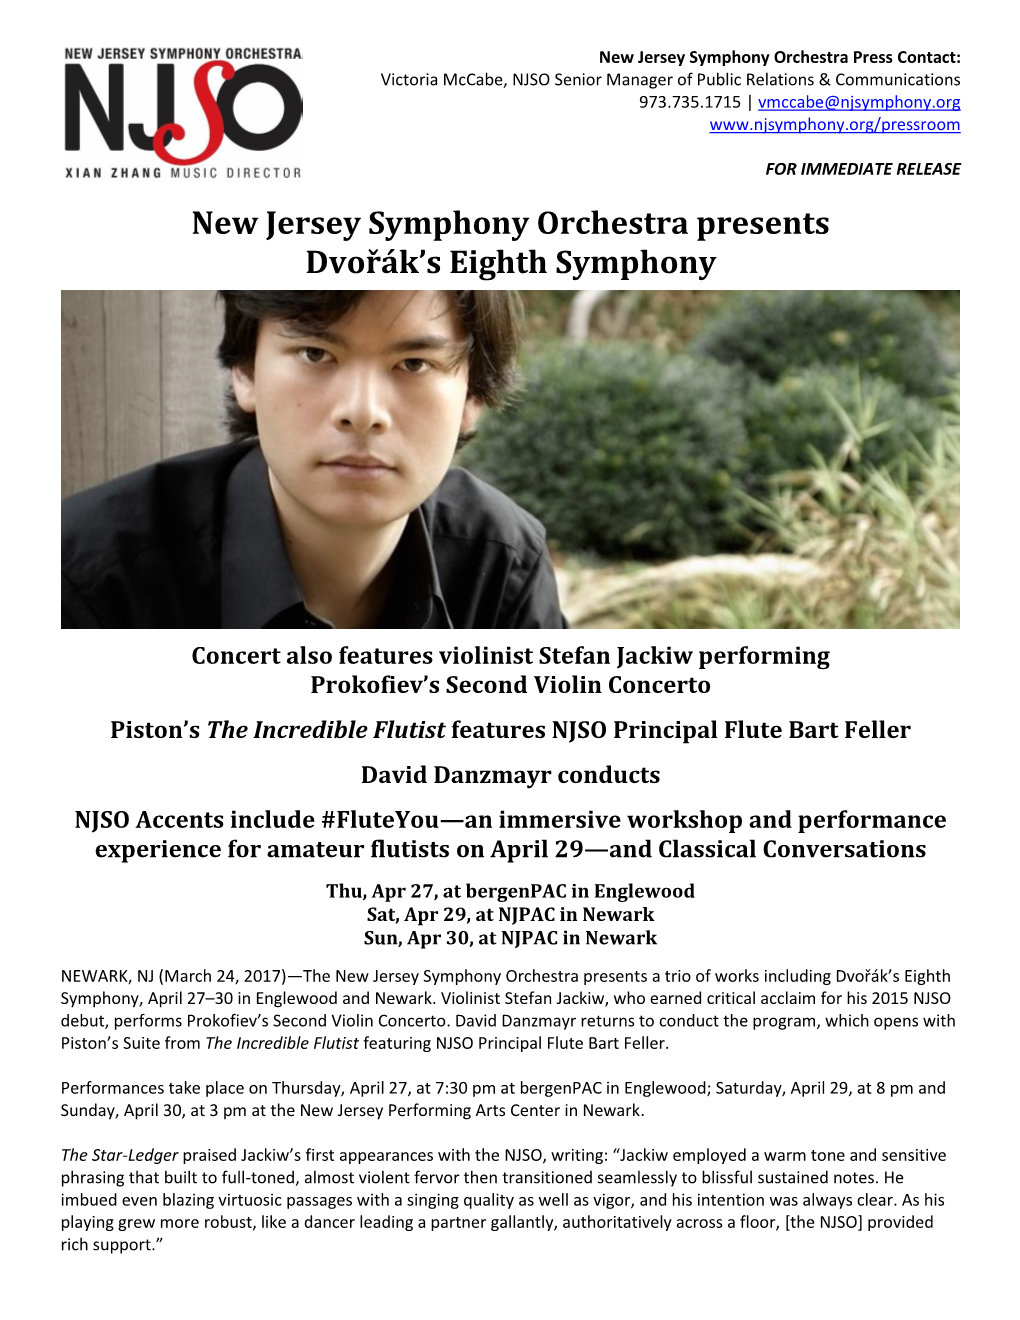 New Jersey Symphony Orchestra Presents Dvořák's Eighth Symphony